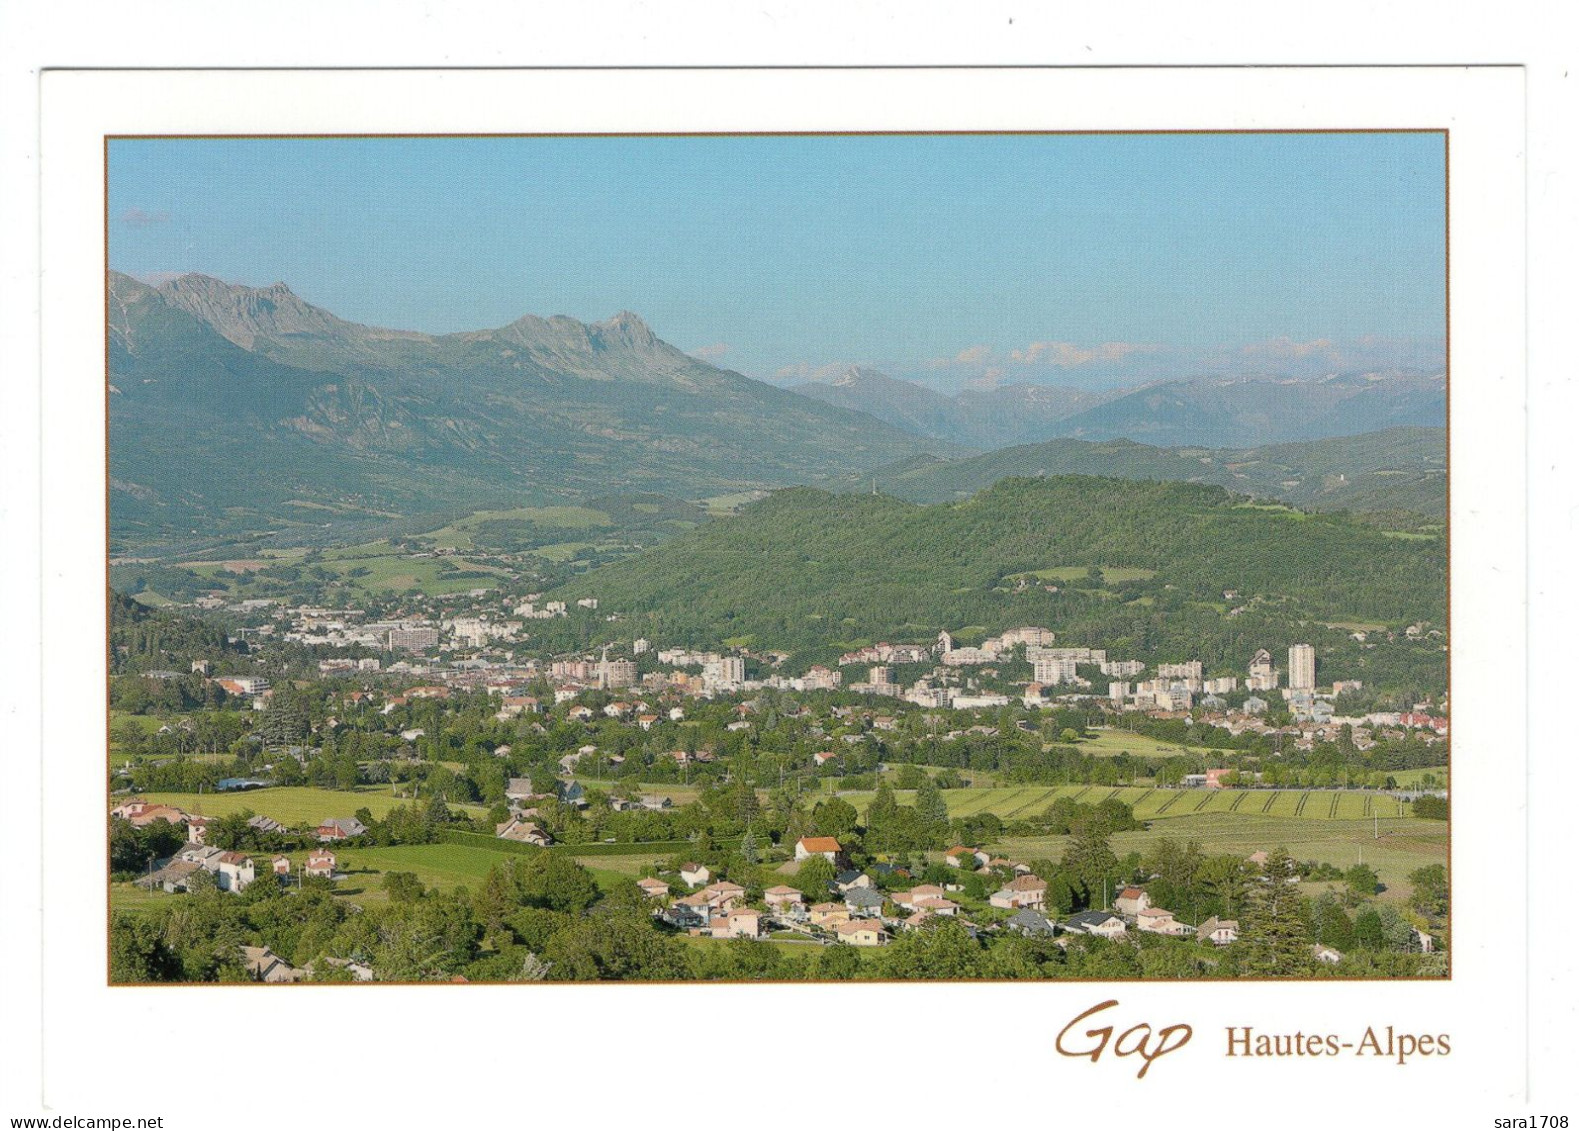 05 GAP, Hautes Alpes. - Gap